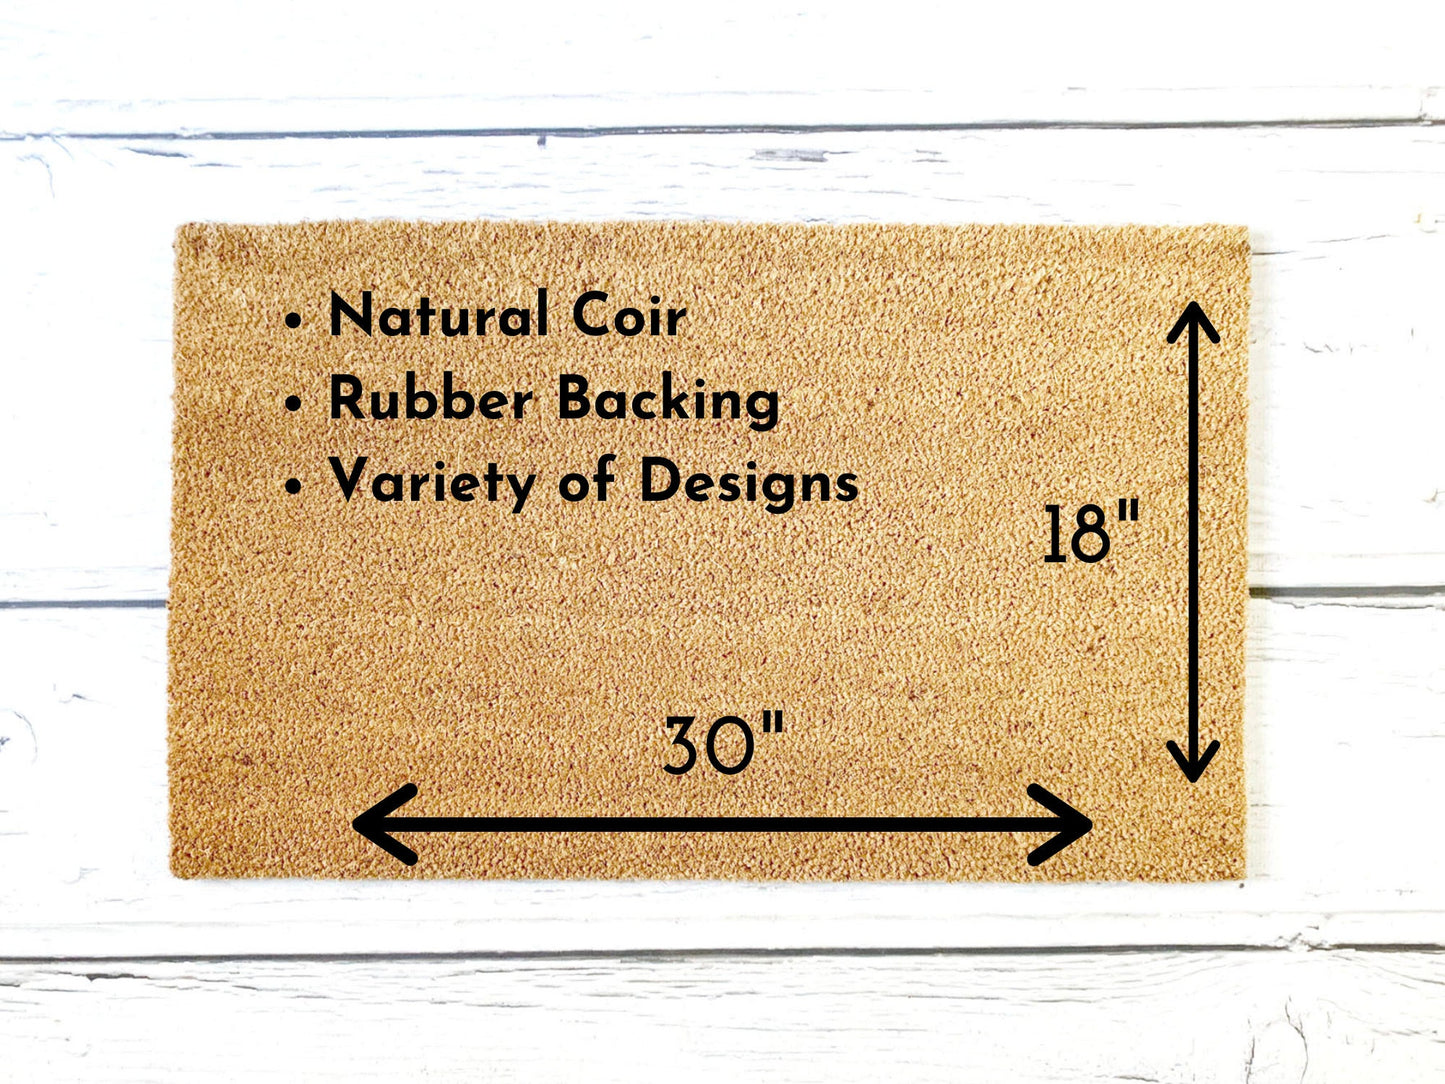 Freakin Bats Doormat | Housewarming Gift | Wedding Gift | Custom Doormat | Closing Gift | Welcome Doormat | Front Door Mat | Home Decor